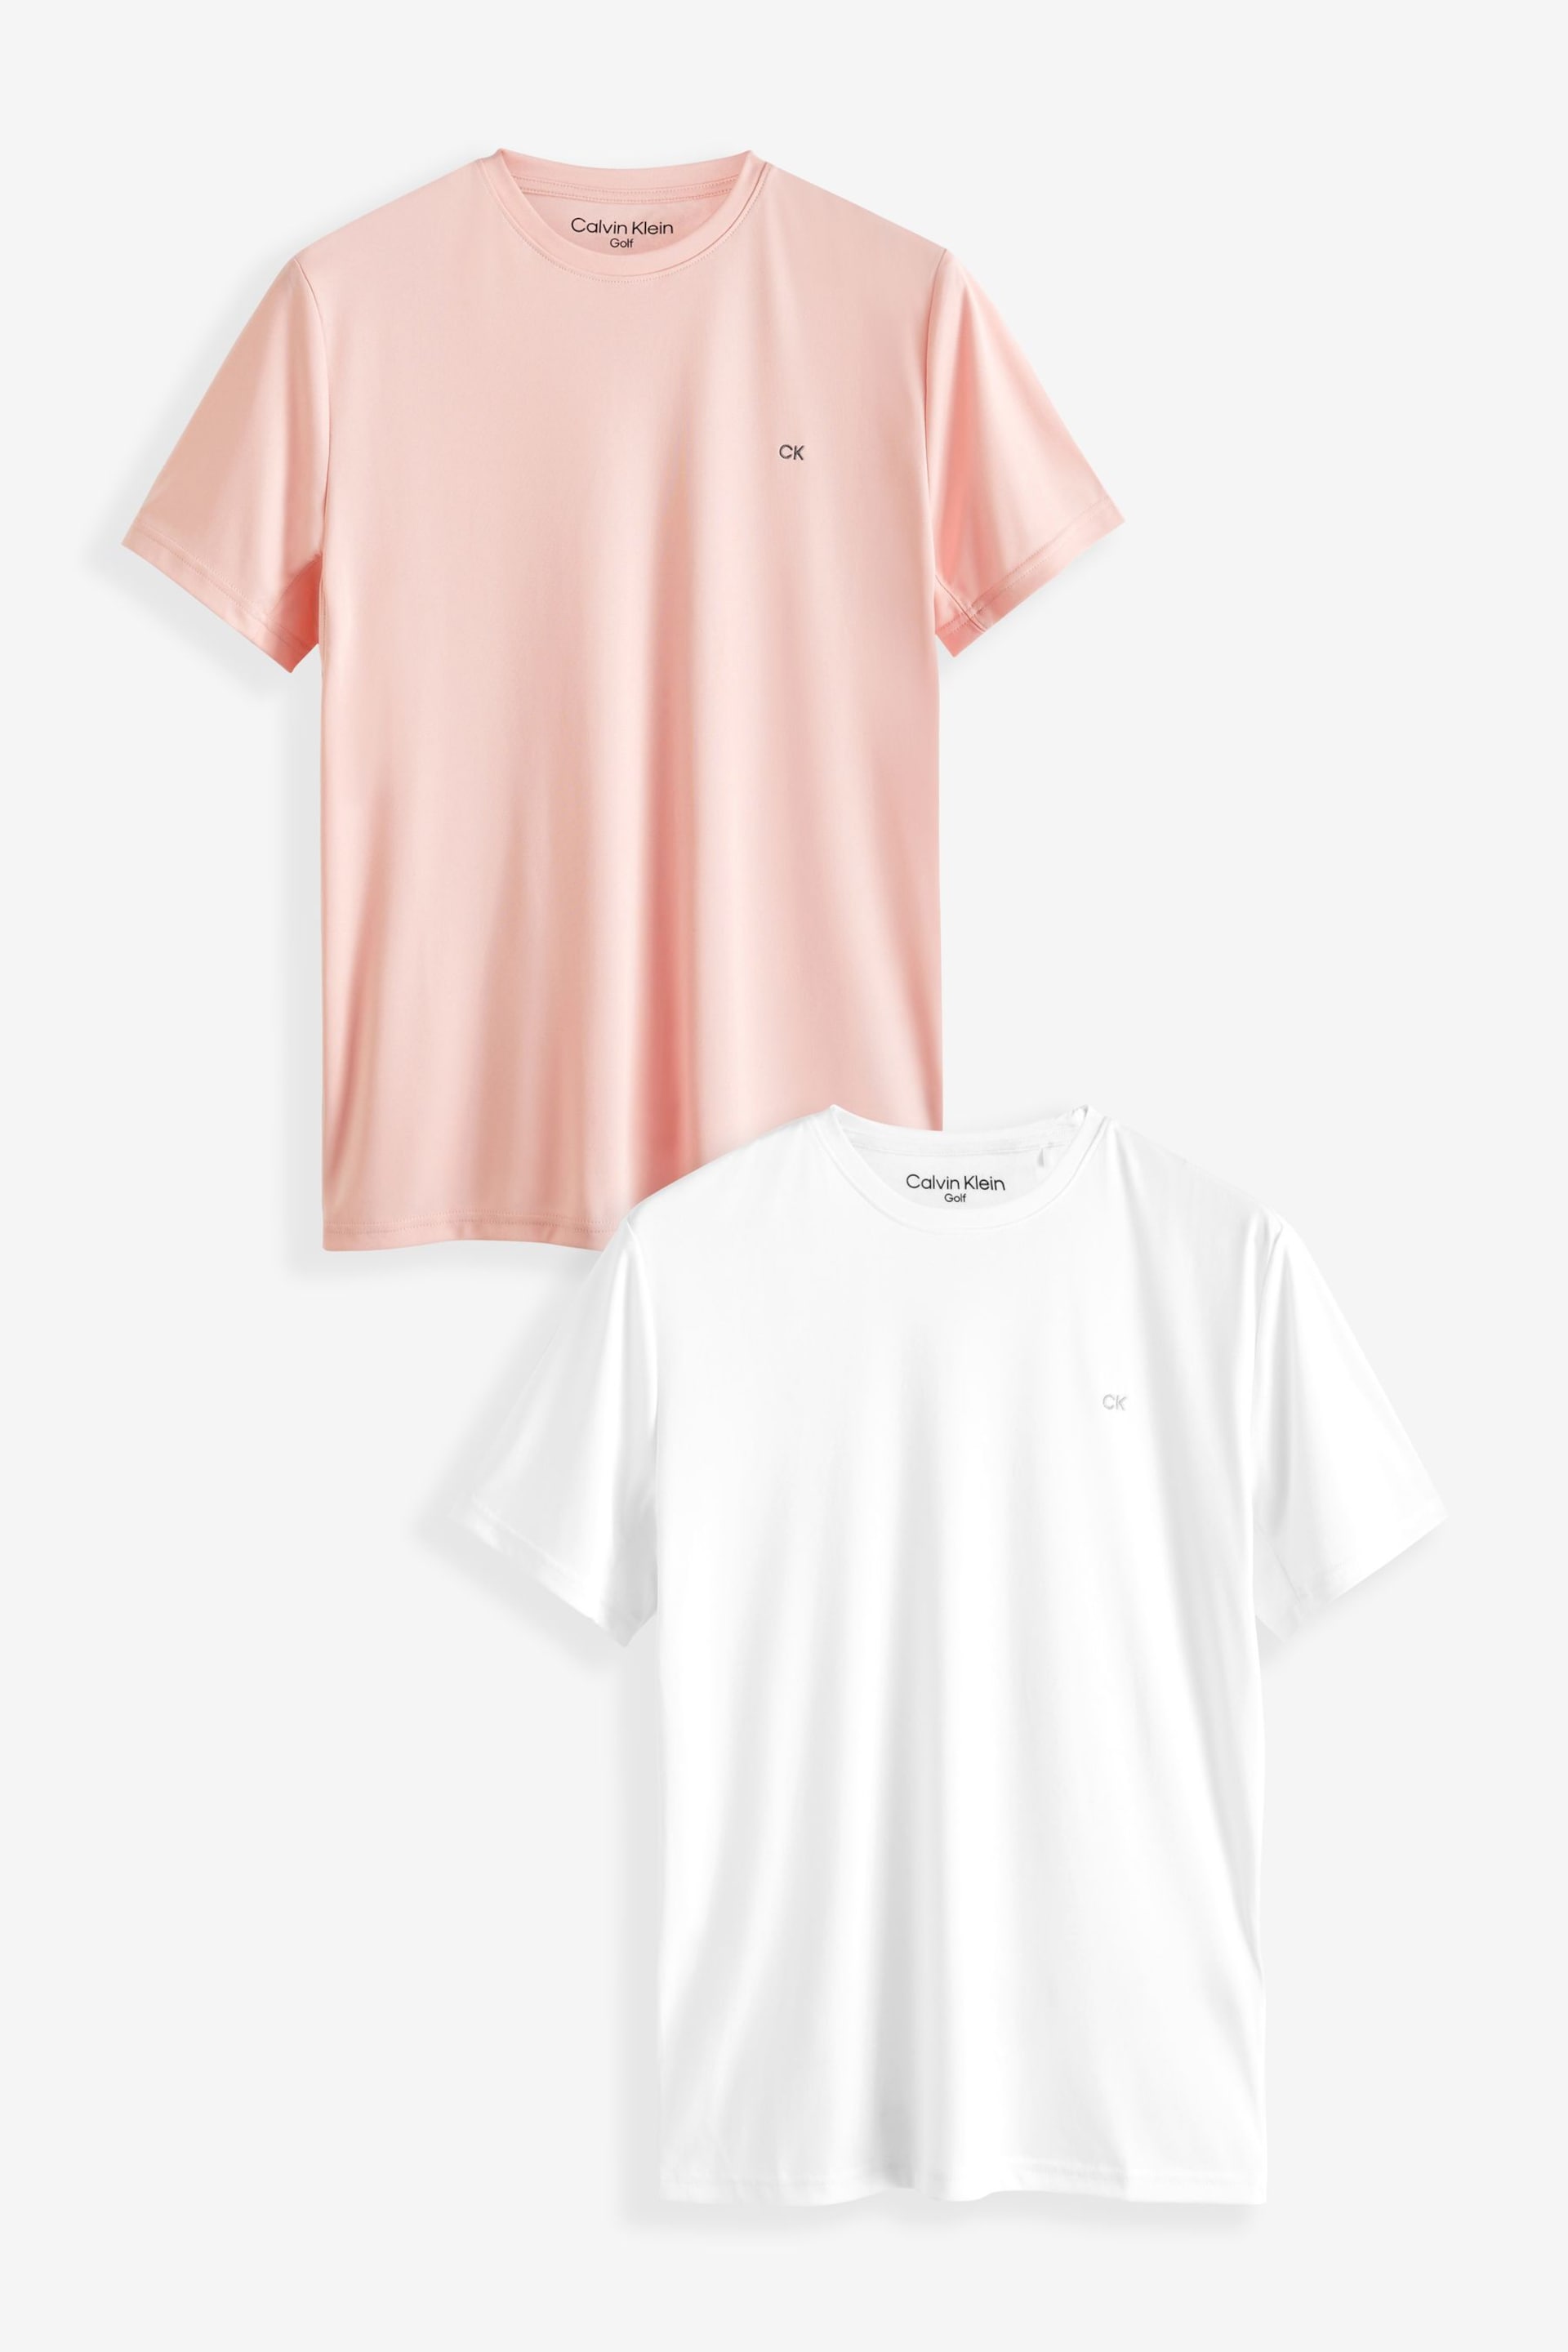 Calvin Klein Golf Tech T-Shirt 2 Pack - Image 1 of 7